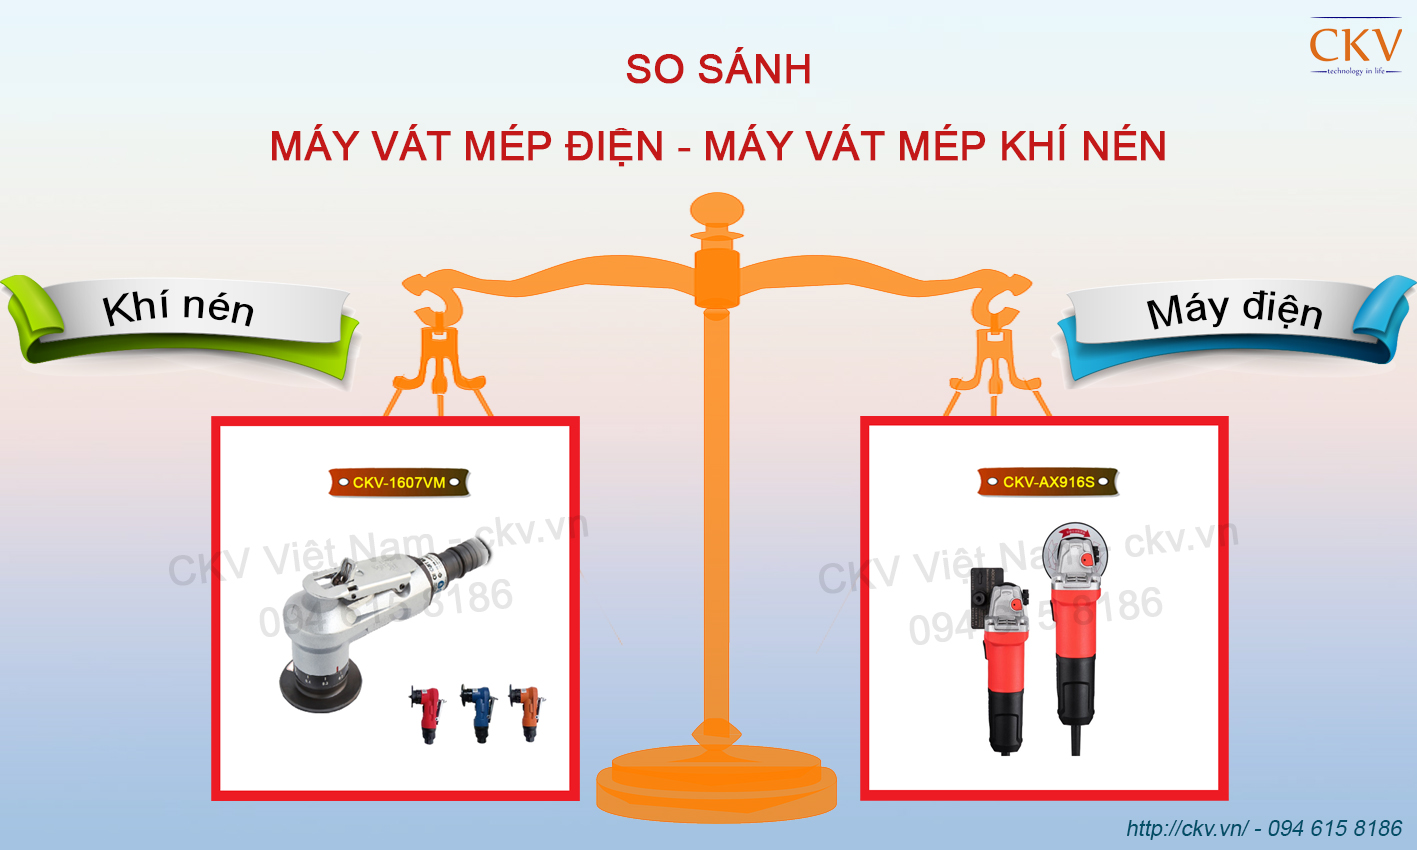 So sánh máy vát mép ống cầm tay điện và khí nén | CKV-AX916S và CKV-1607VM